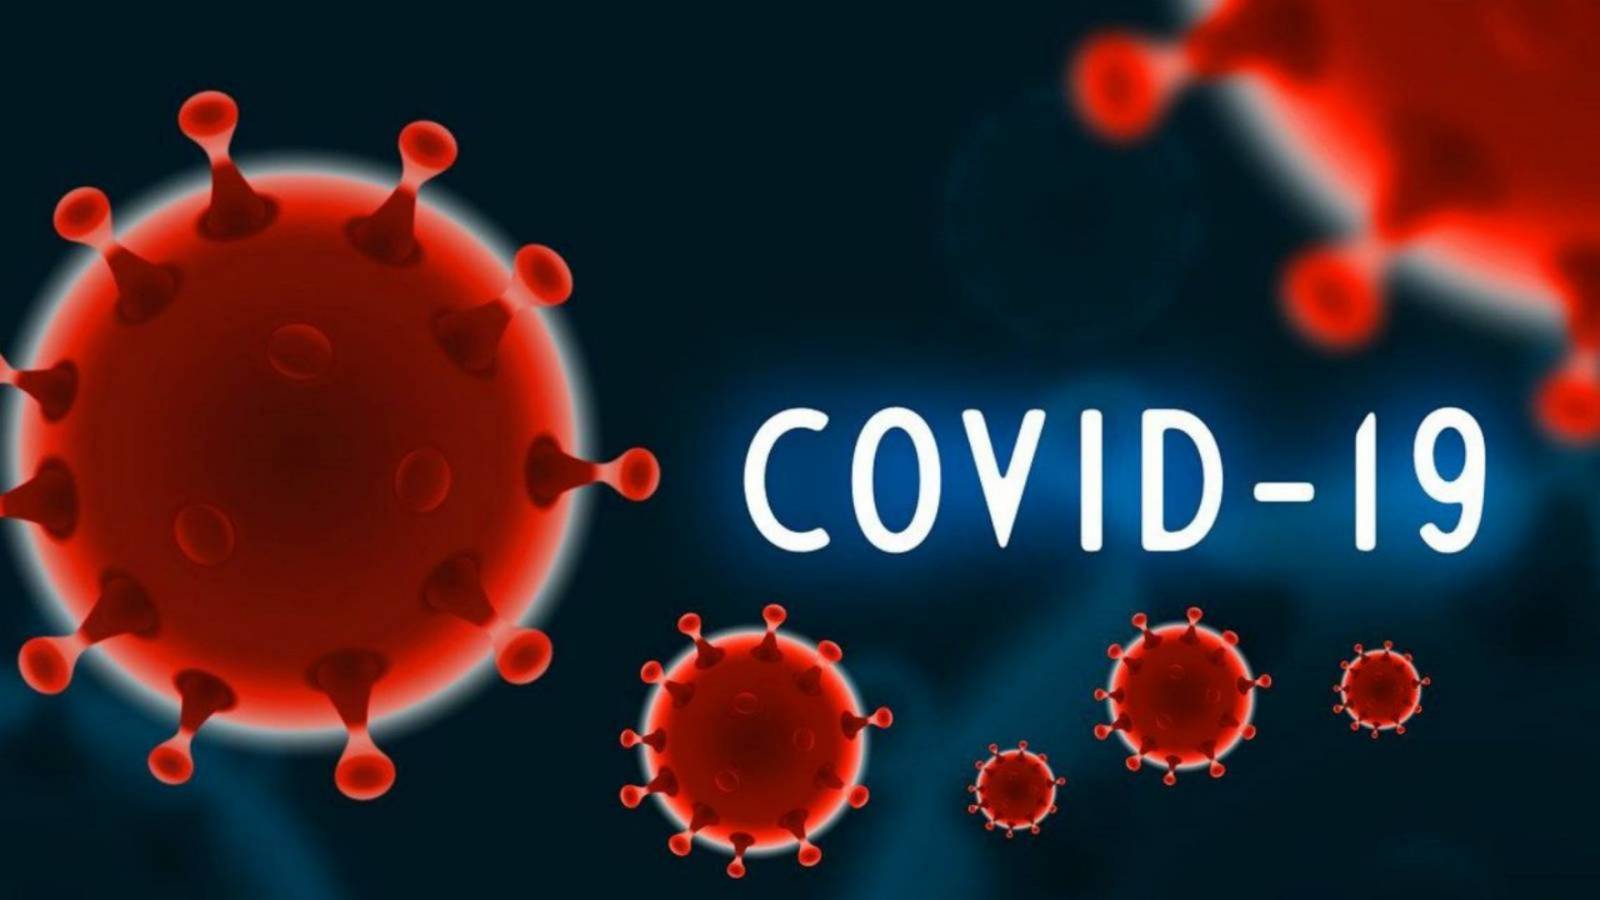 Taux d'infection ÉLEVÉS dans les comtés roumains de COVID-19